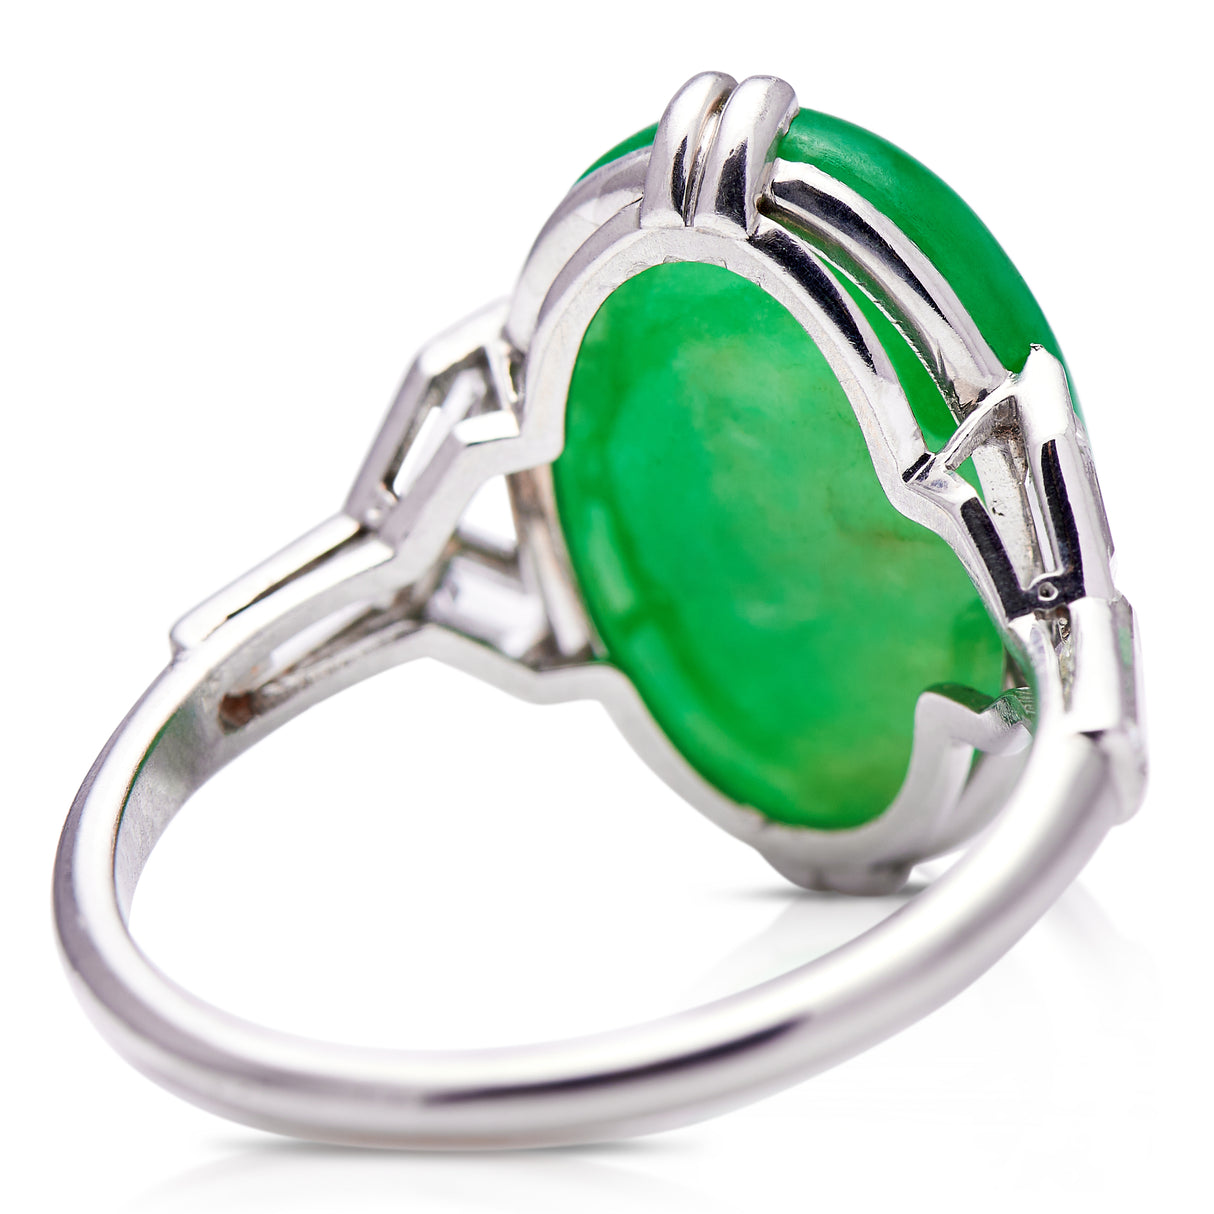 Art Deco | platinum, cabochon imperial jade & diamond ring